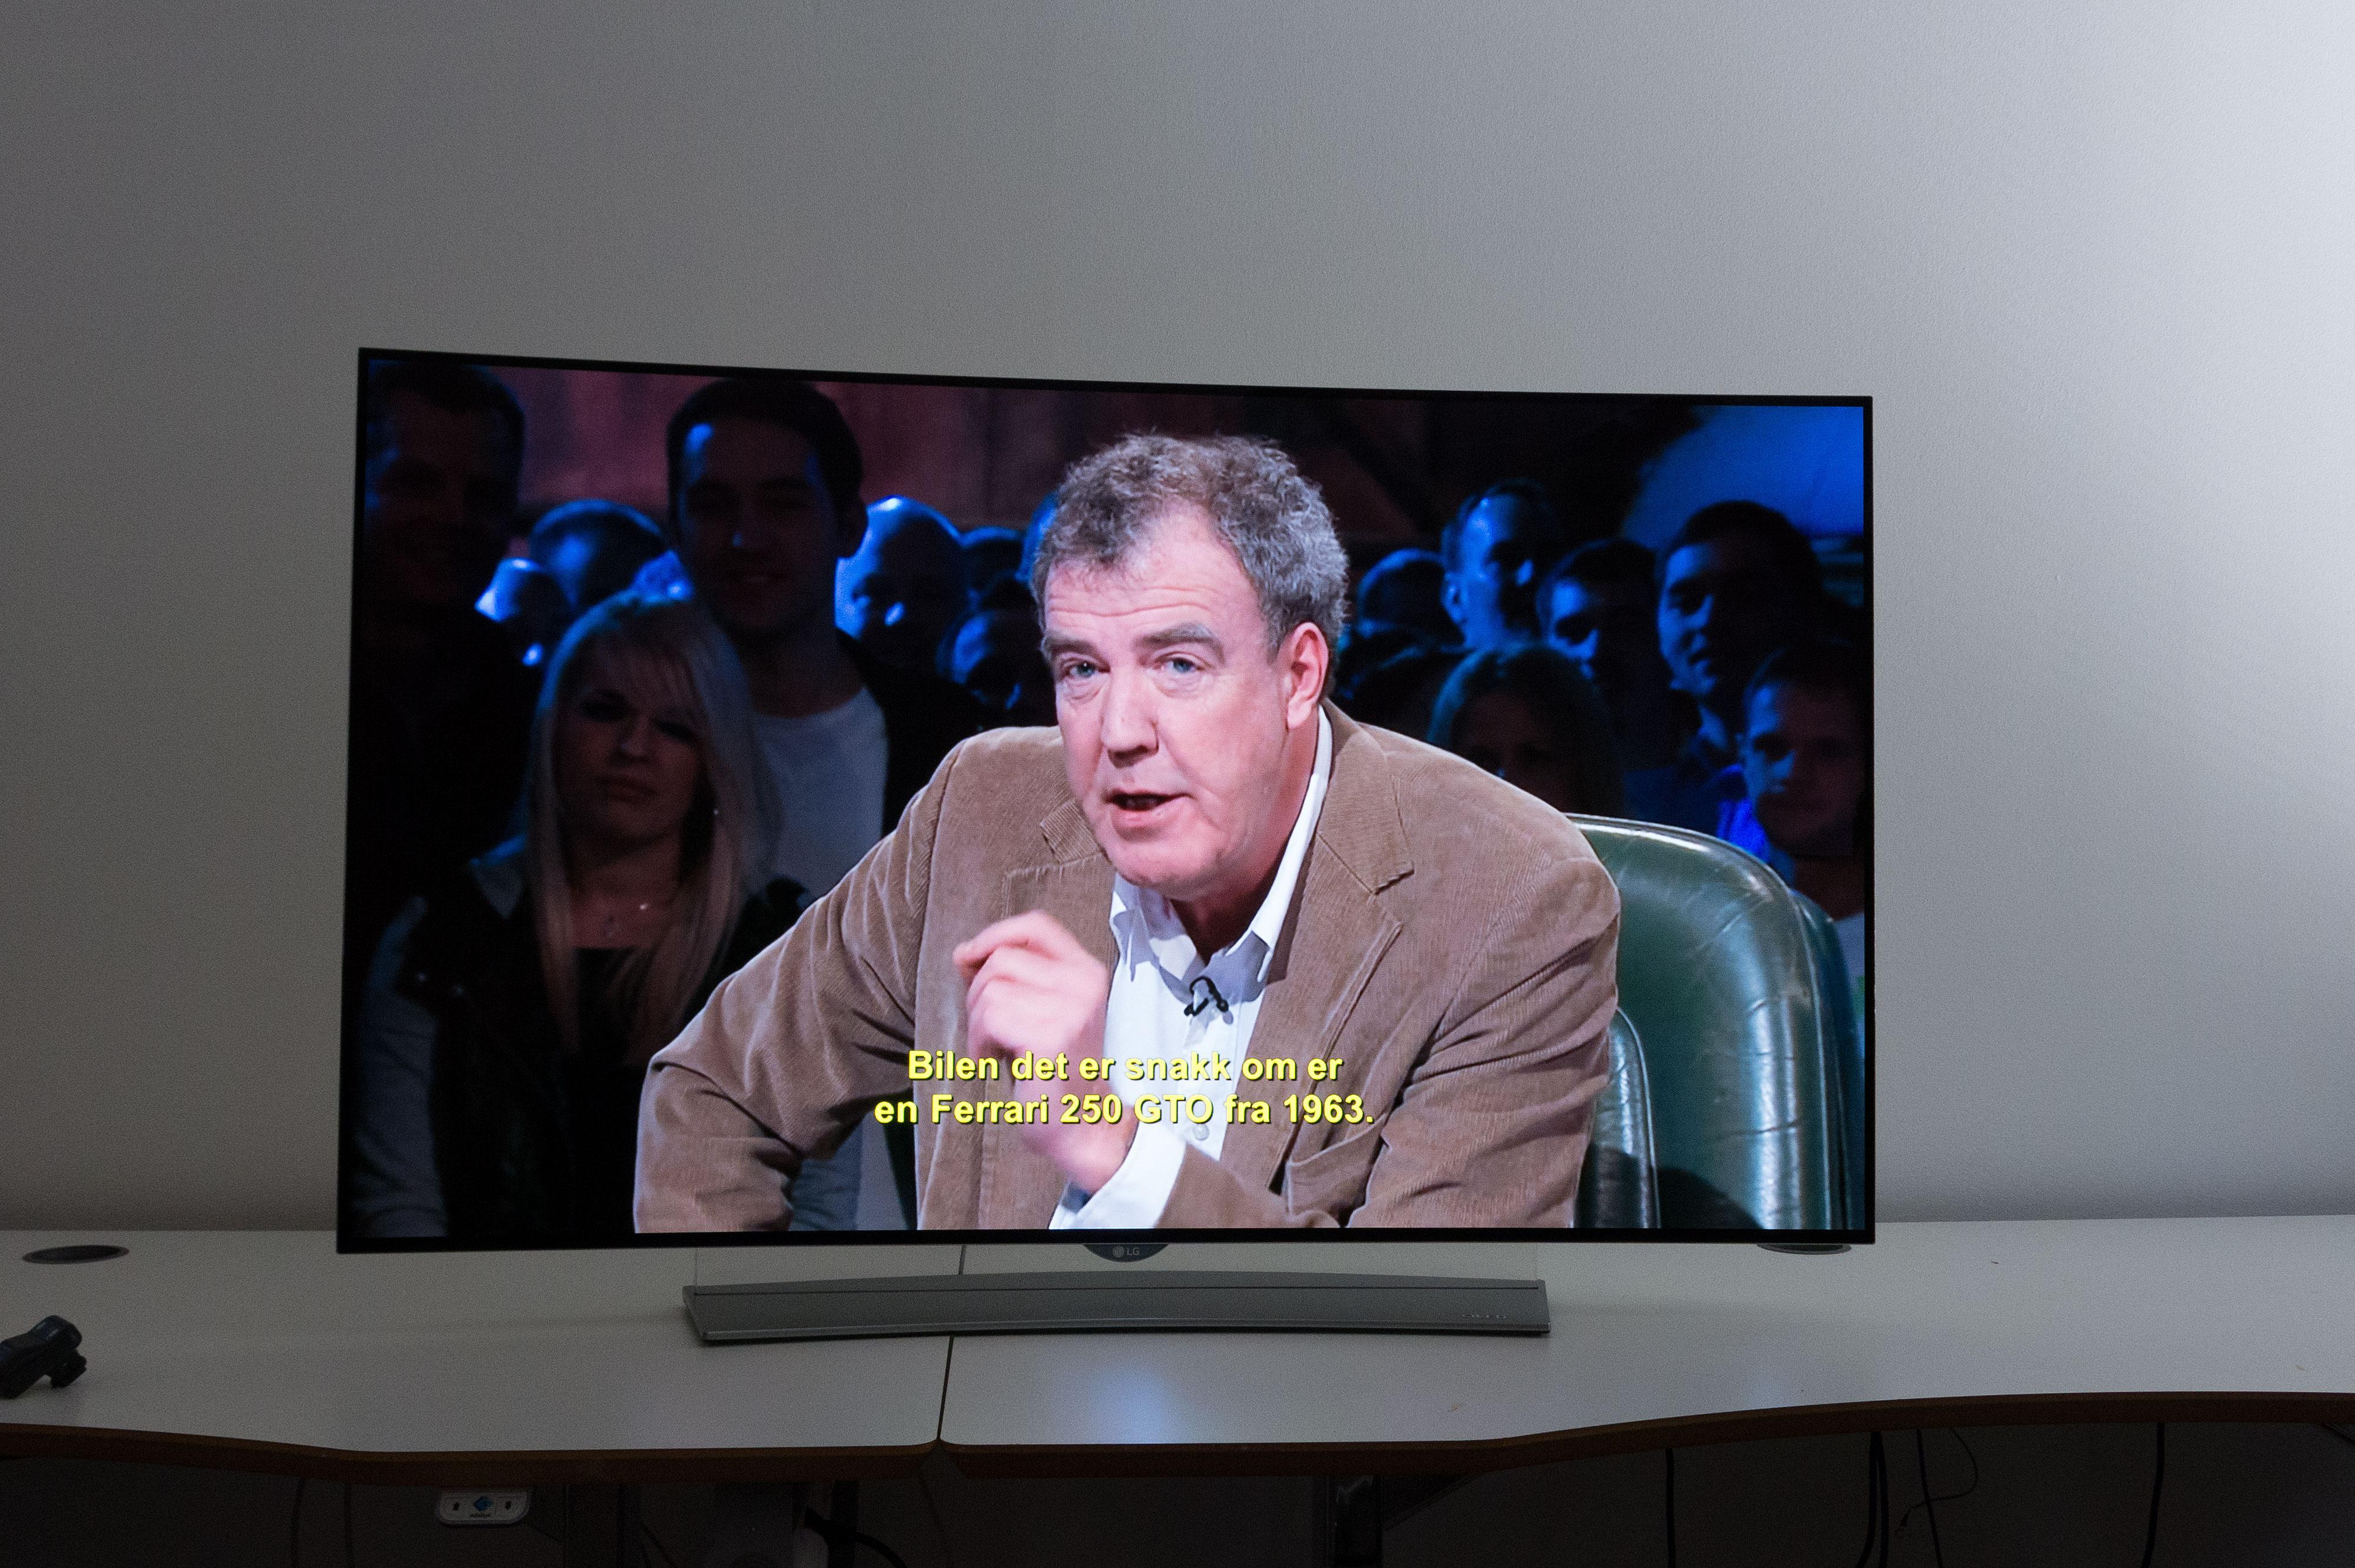 TV-en oppskalerer bra. Selv Clarkson ser skarp ut. Foto: Ole Henrik Johansen / Tek.no